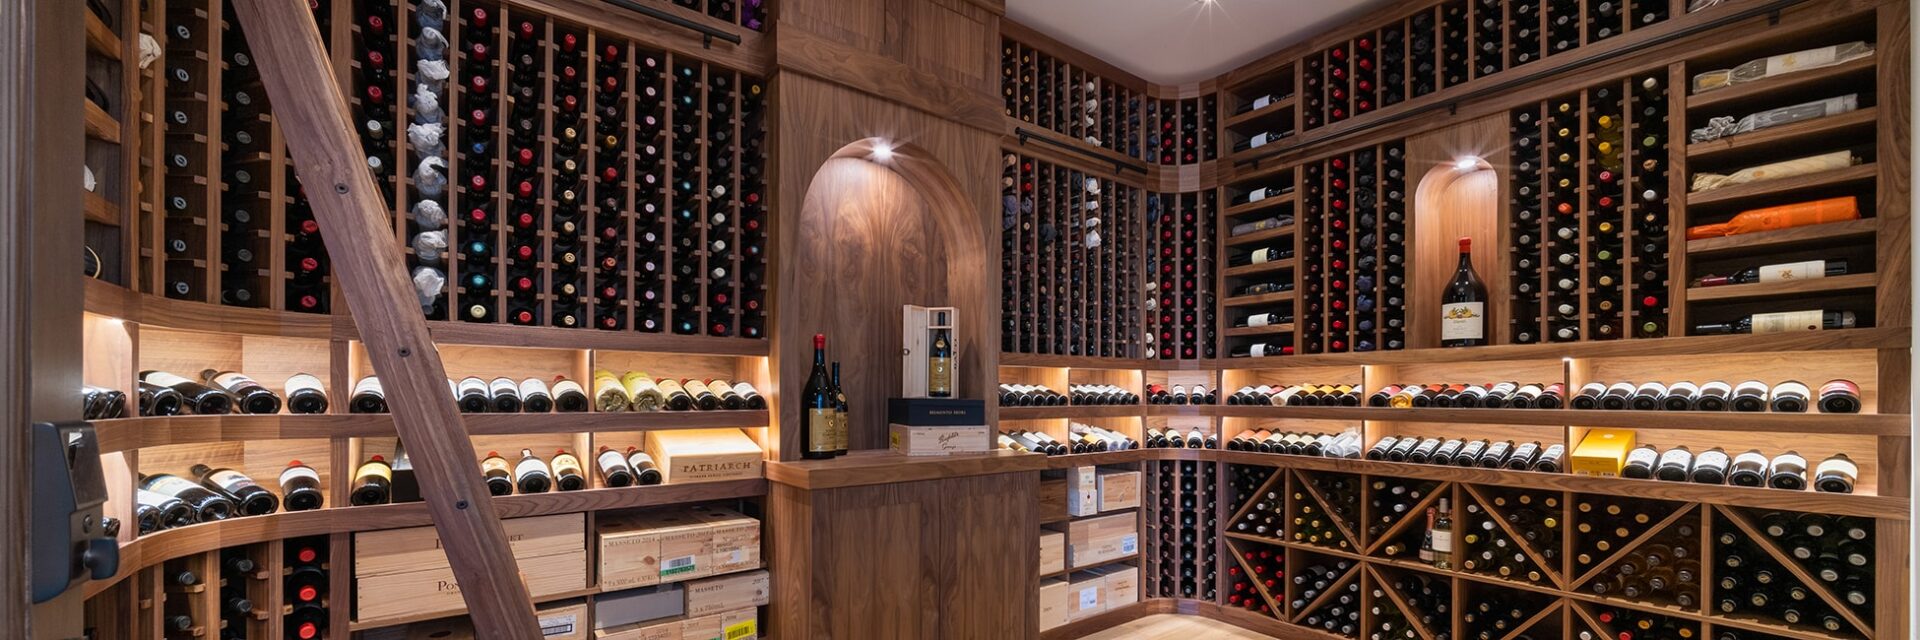 Wooden Wine Racks by Wine Cellar Depot